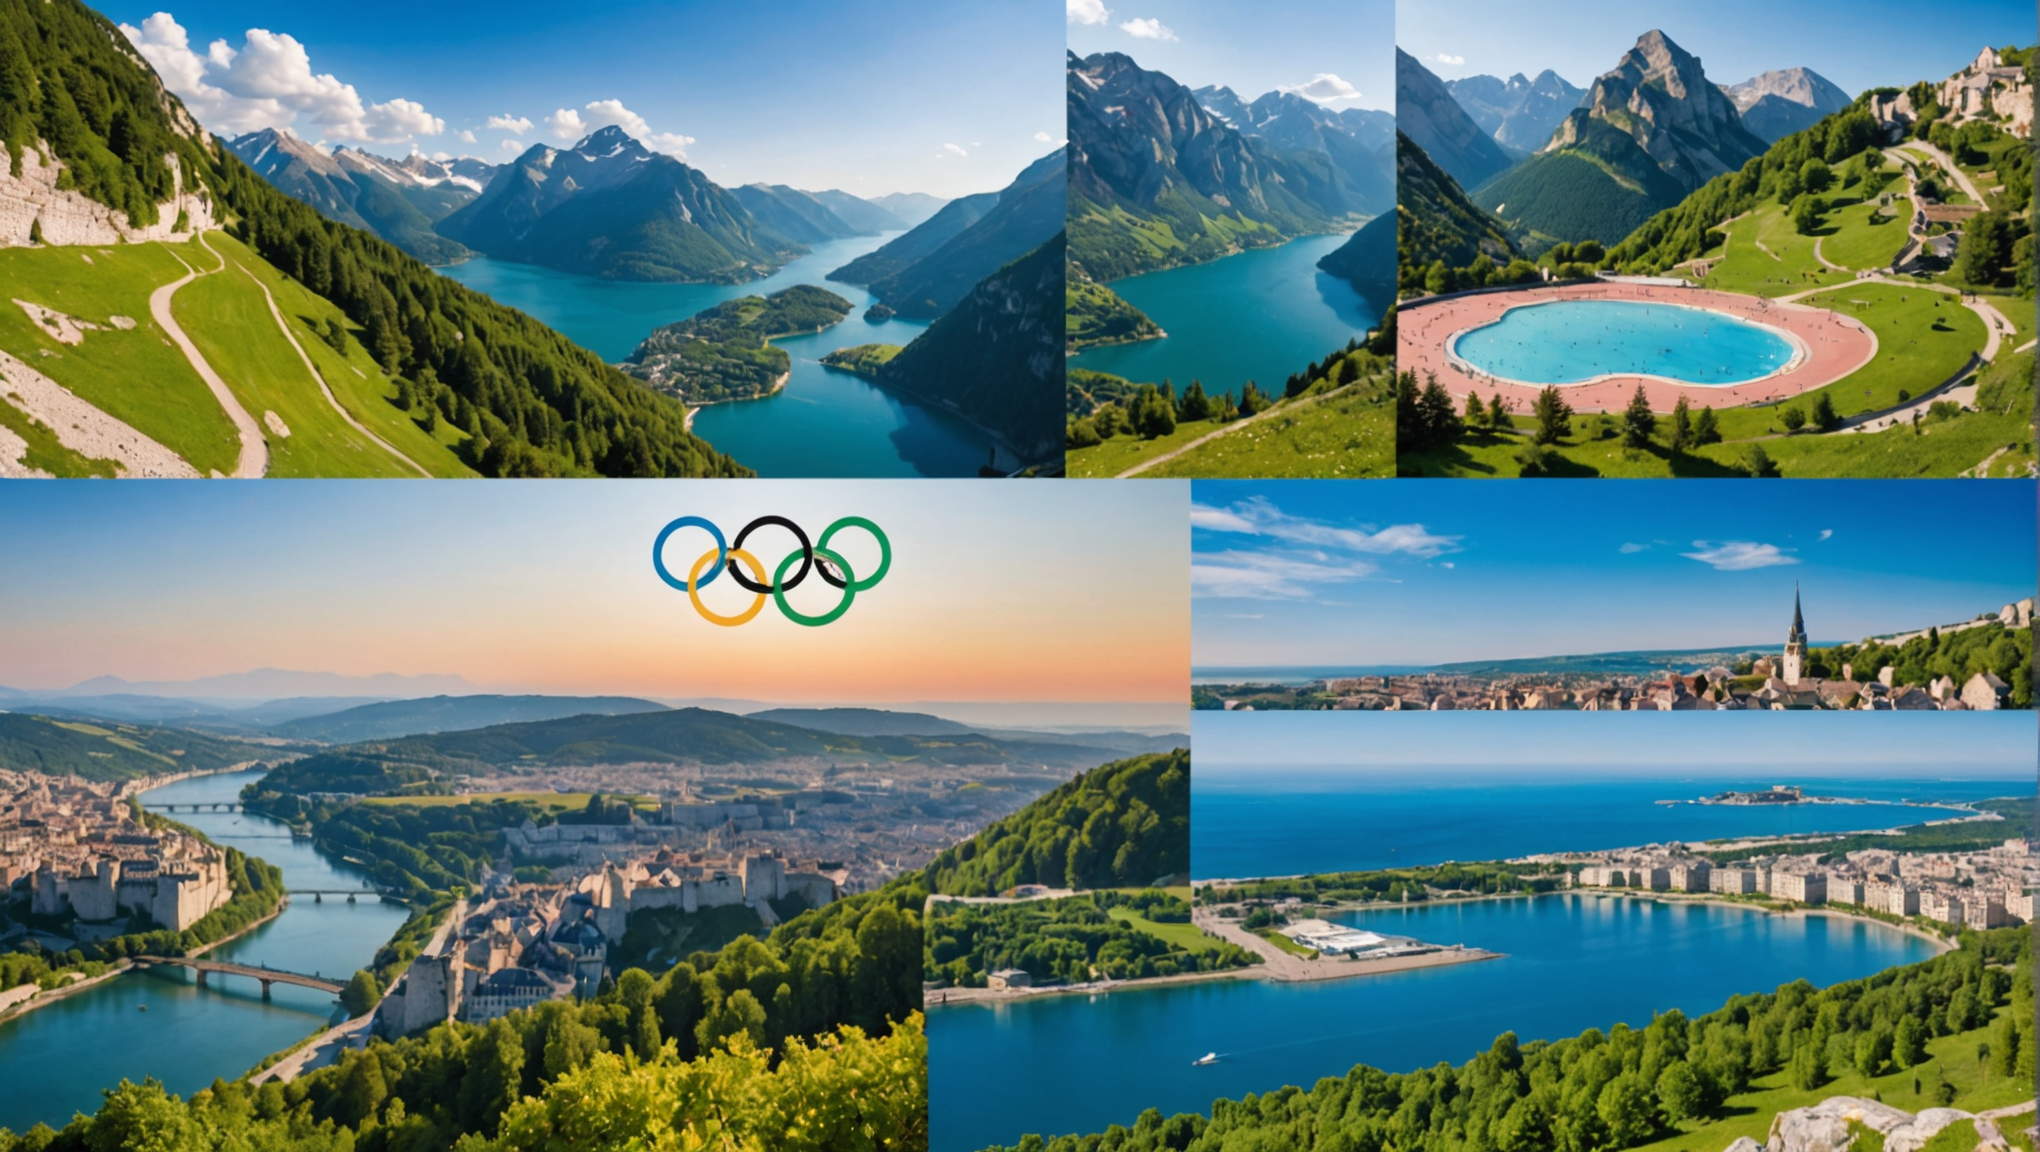 découvrez l'analyse approfondie de l'alliance france tourisme sur les réservations estivales et olympiques.